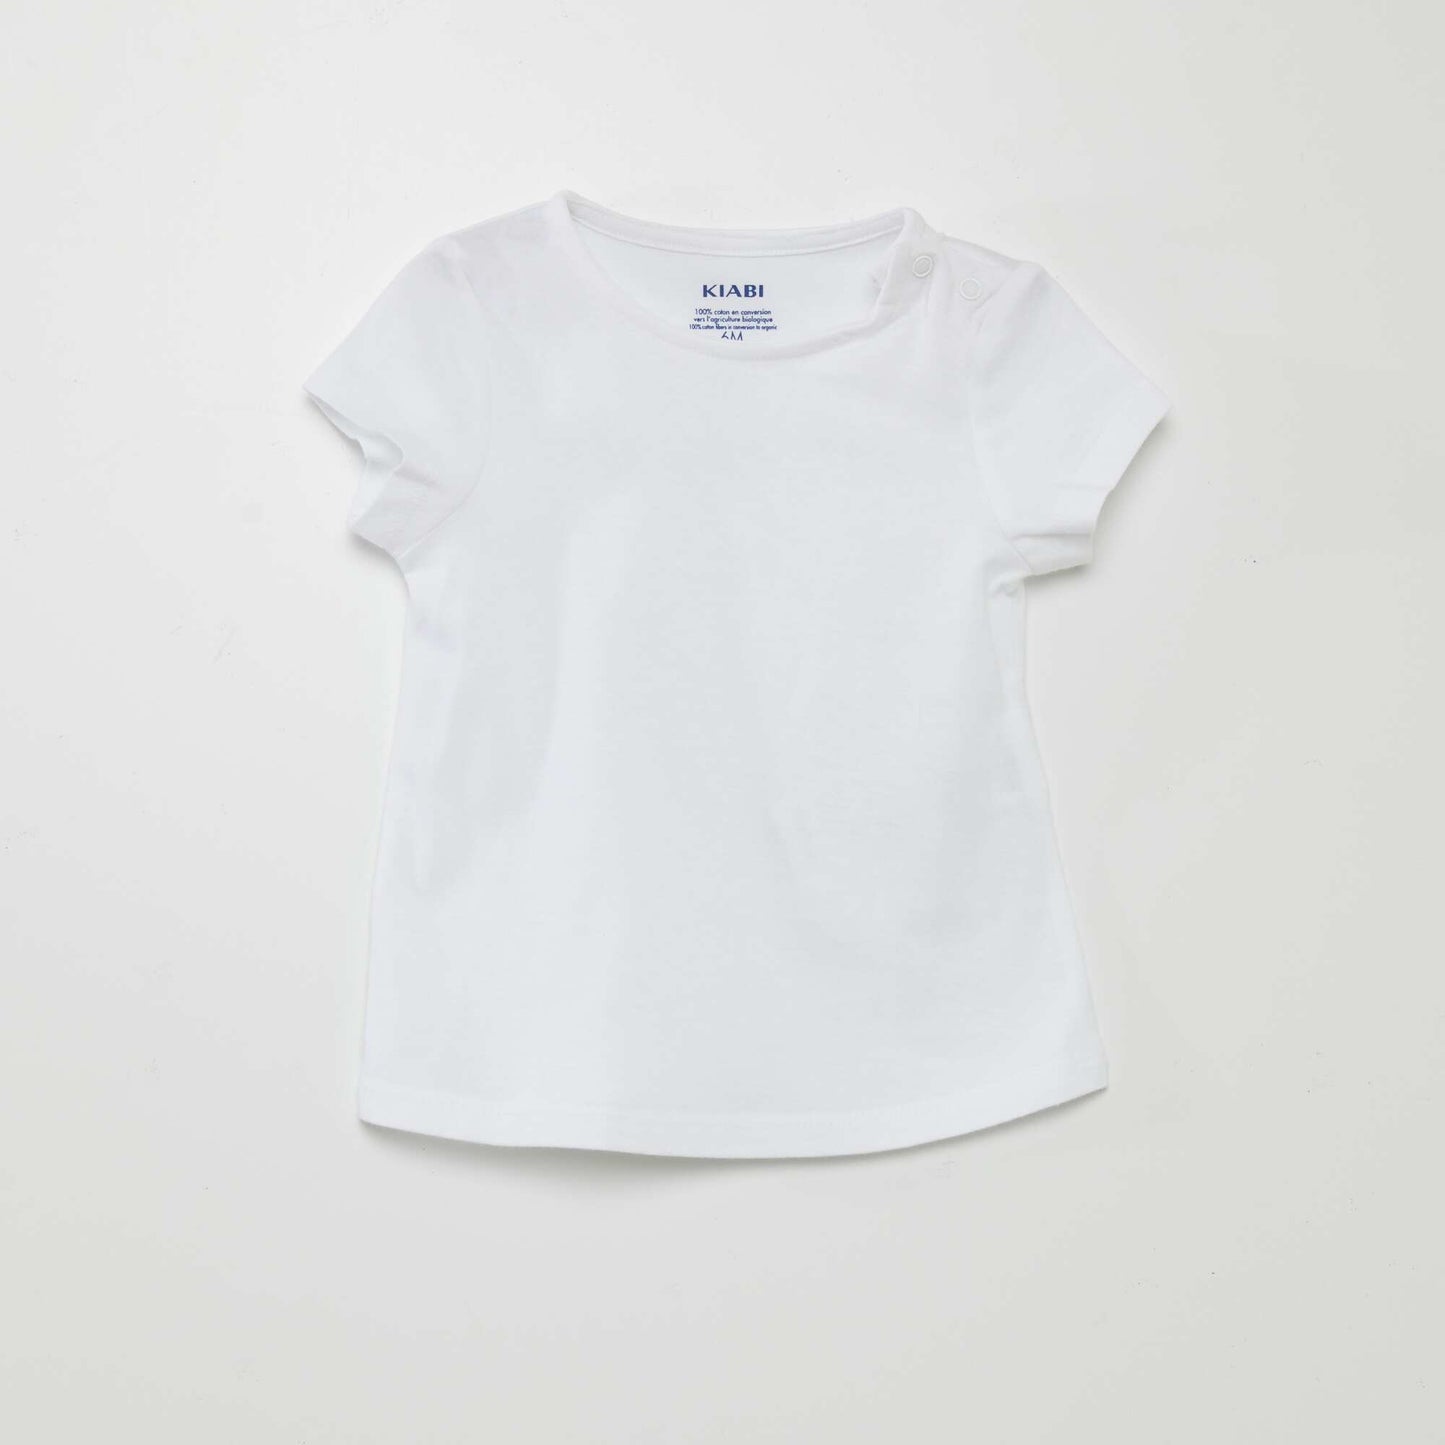 Playsuit + T-shirt set - 2-piece set WHITE